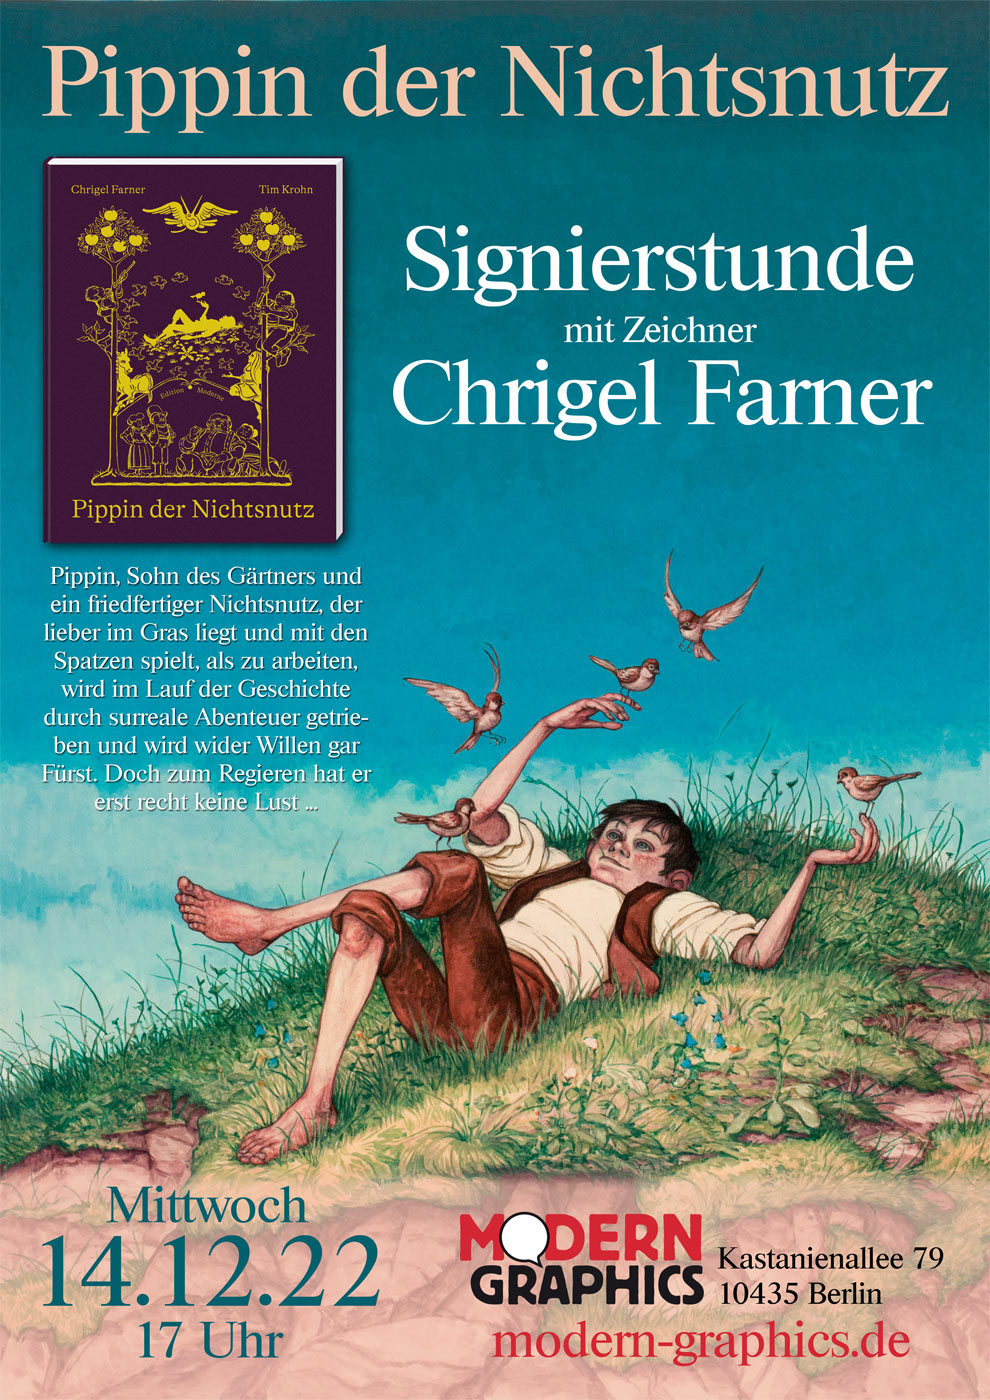 Pippin der Nichtsnutz: Signierstunde mit Chrigel Farner. 14.12.22, 17:00 Uhr, Modern Graphics, Kastanienallee 79, 10435 Berlin